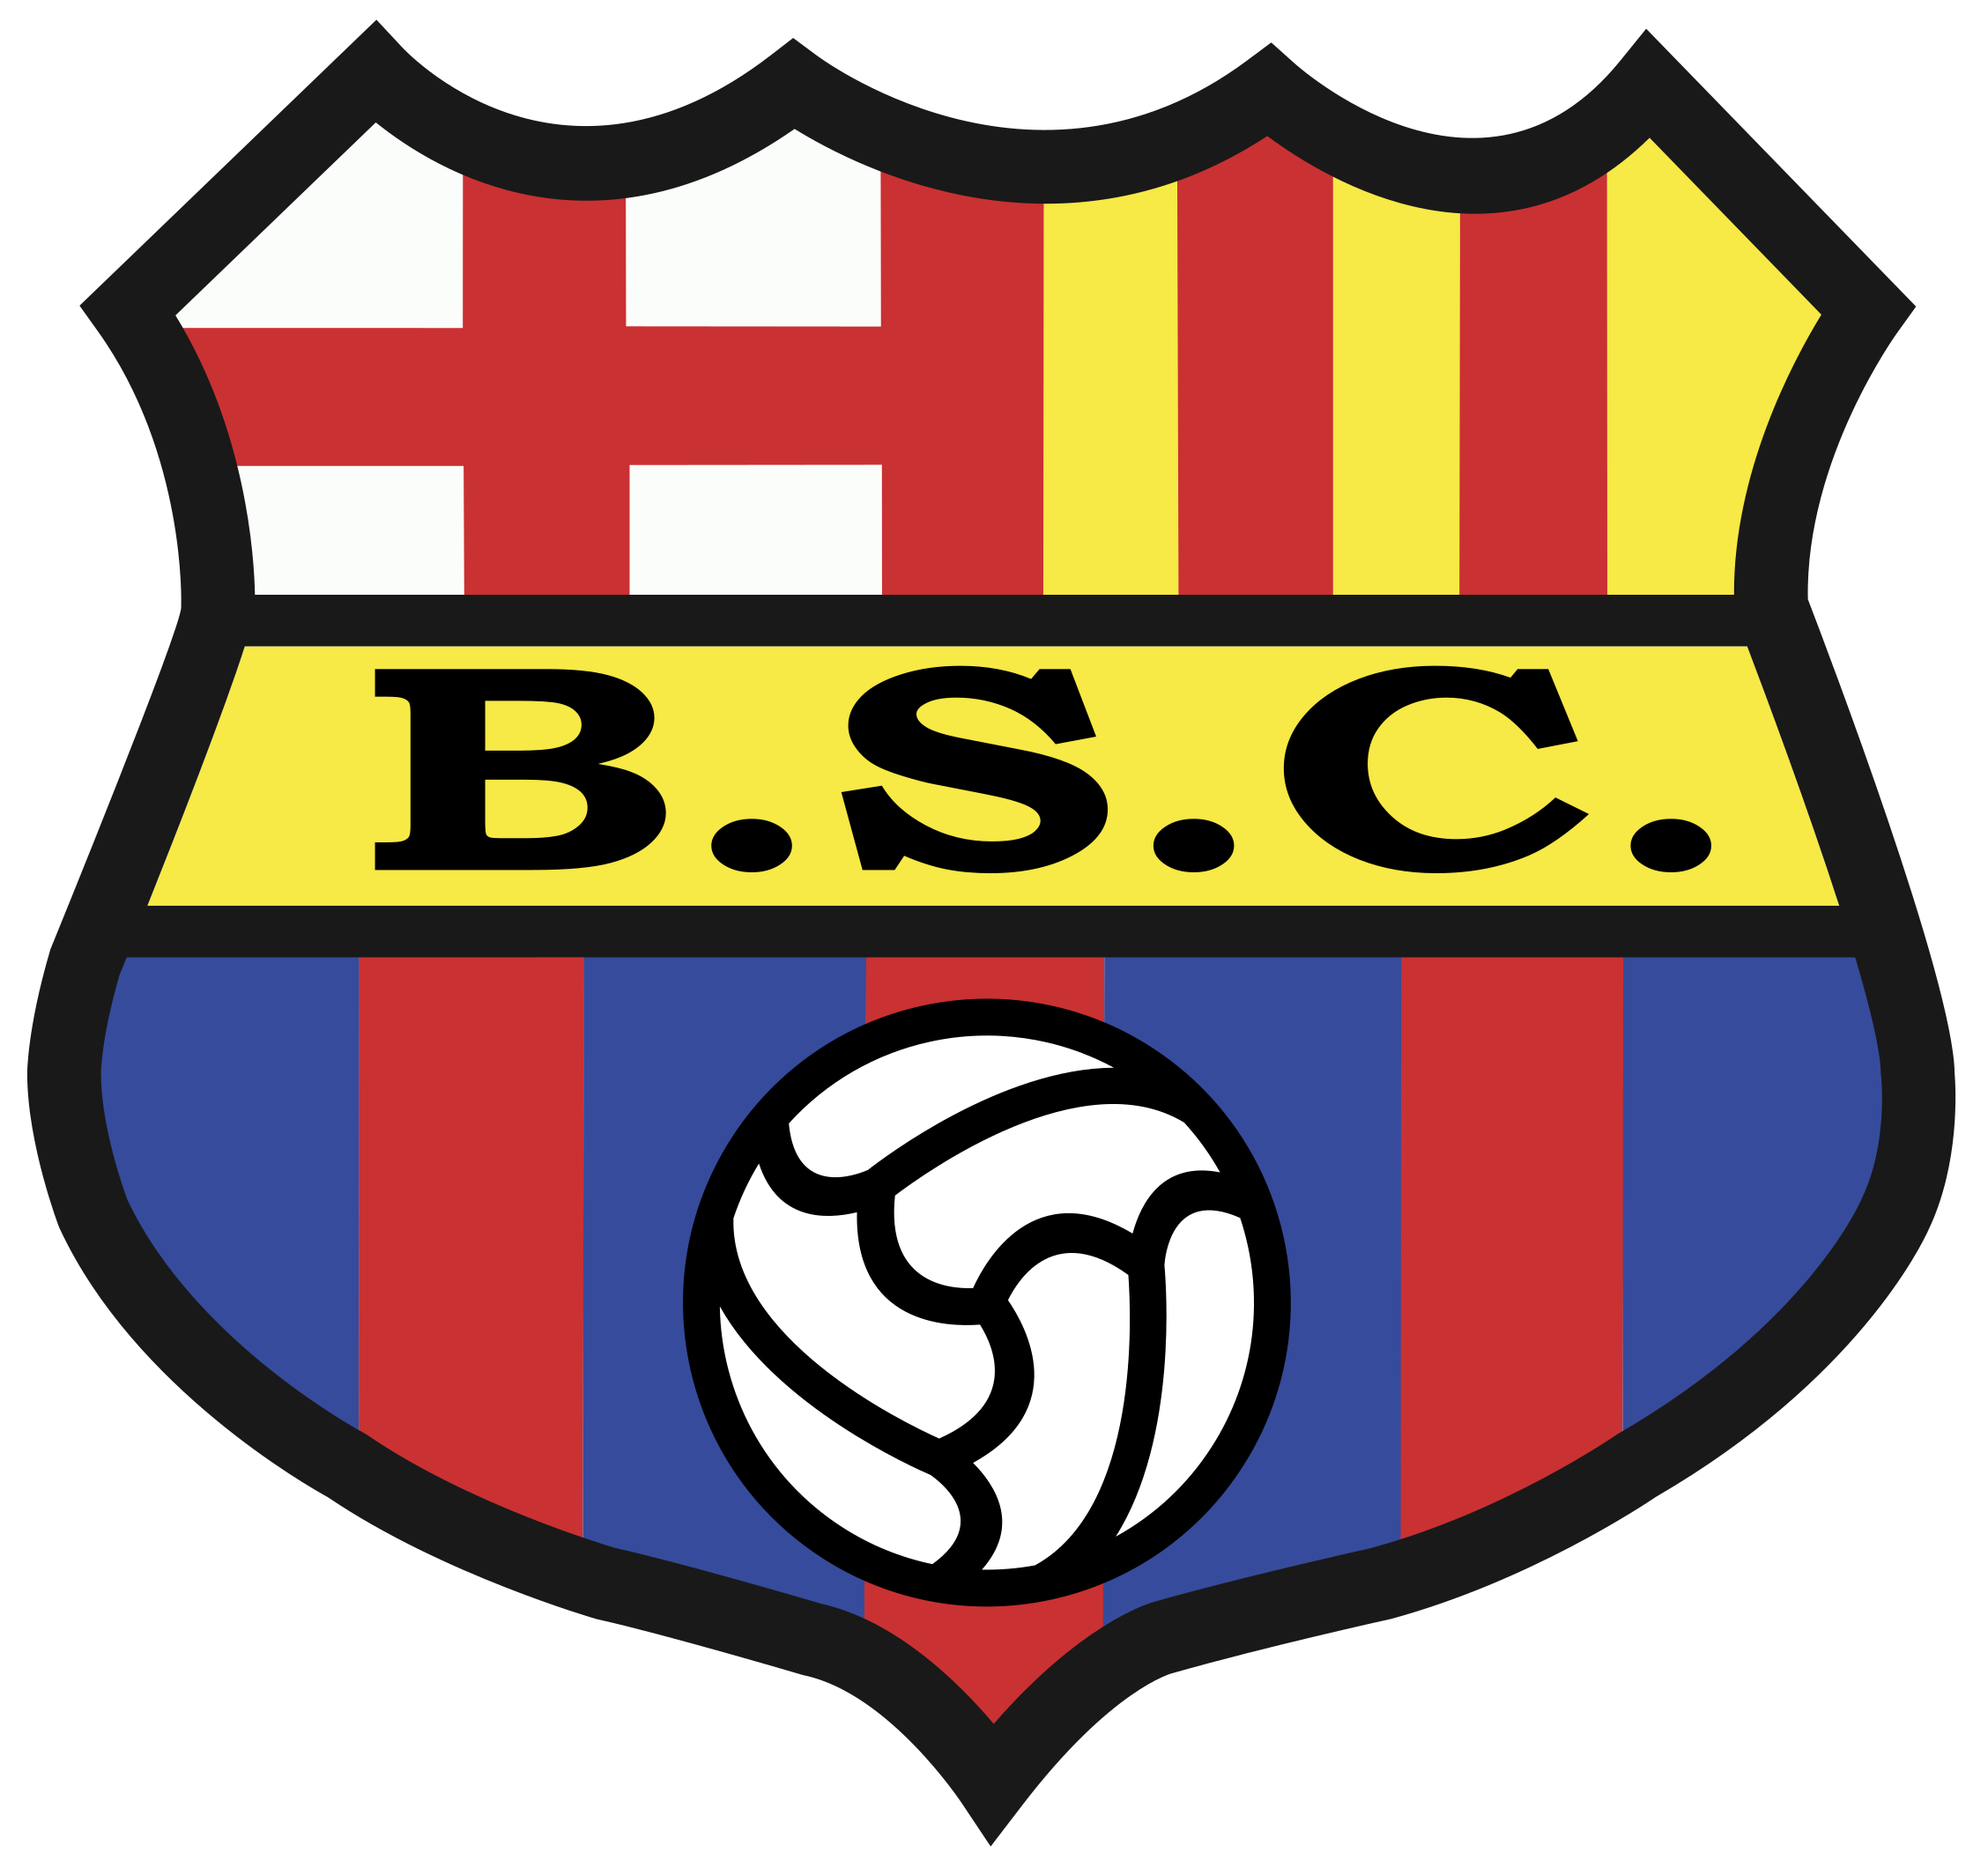 Talleres Cordoba vs Barcelona SC Prediction: Another win coming for Talleres Cordoba?